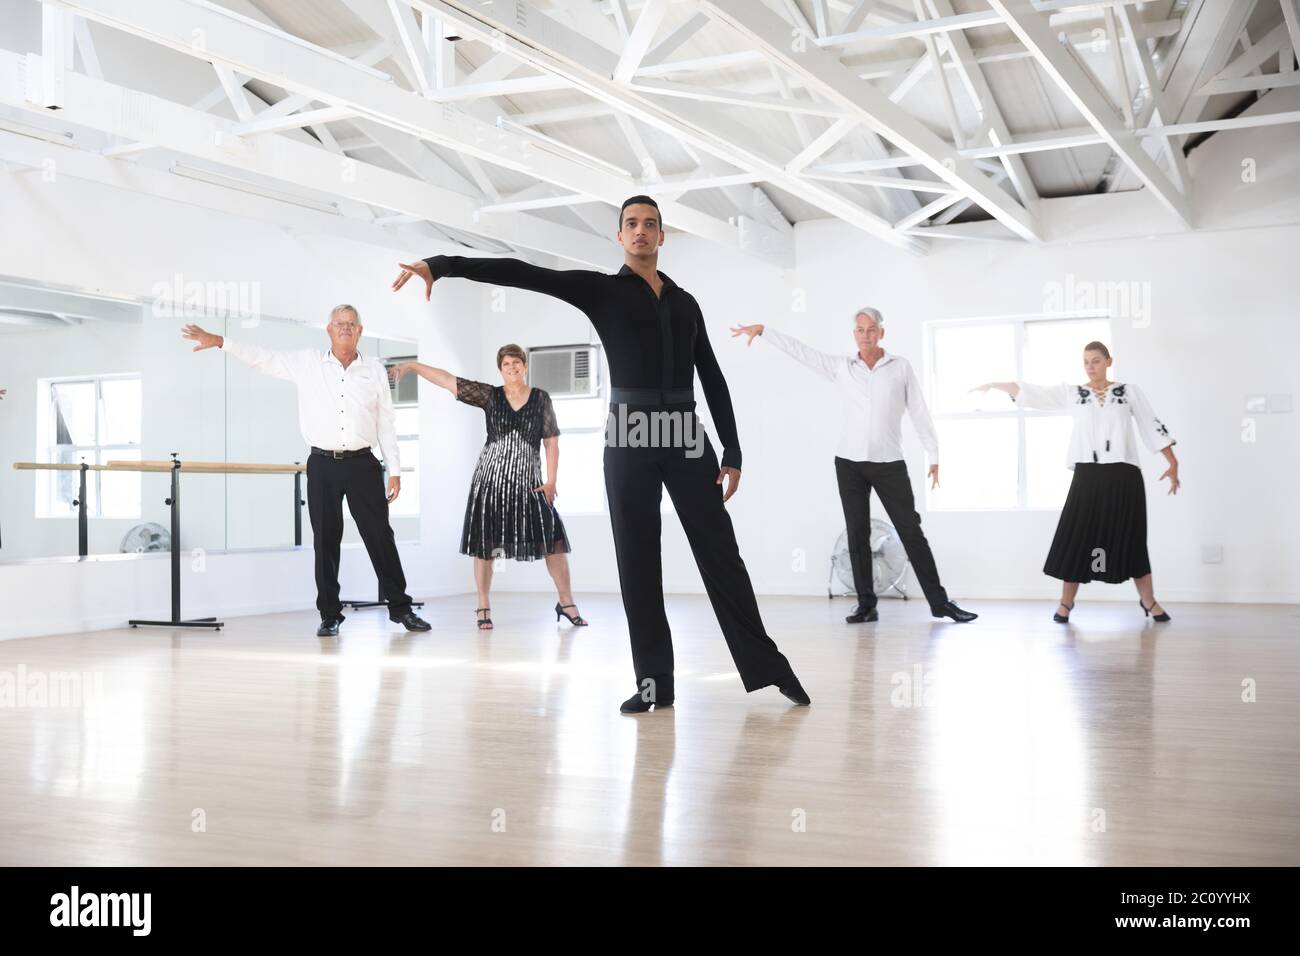 Mixed race dance teacher during ballroom dancing class Stock Photo